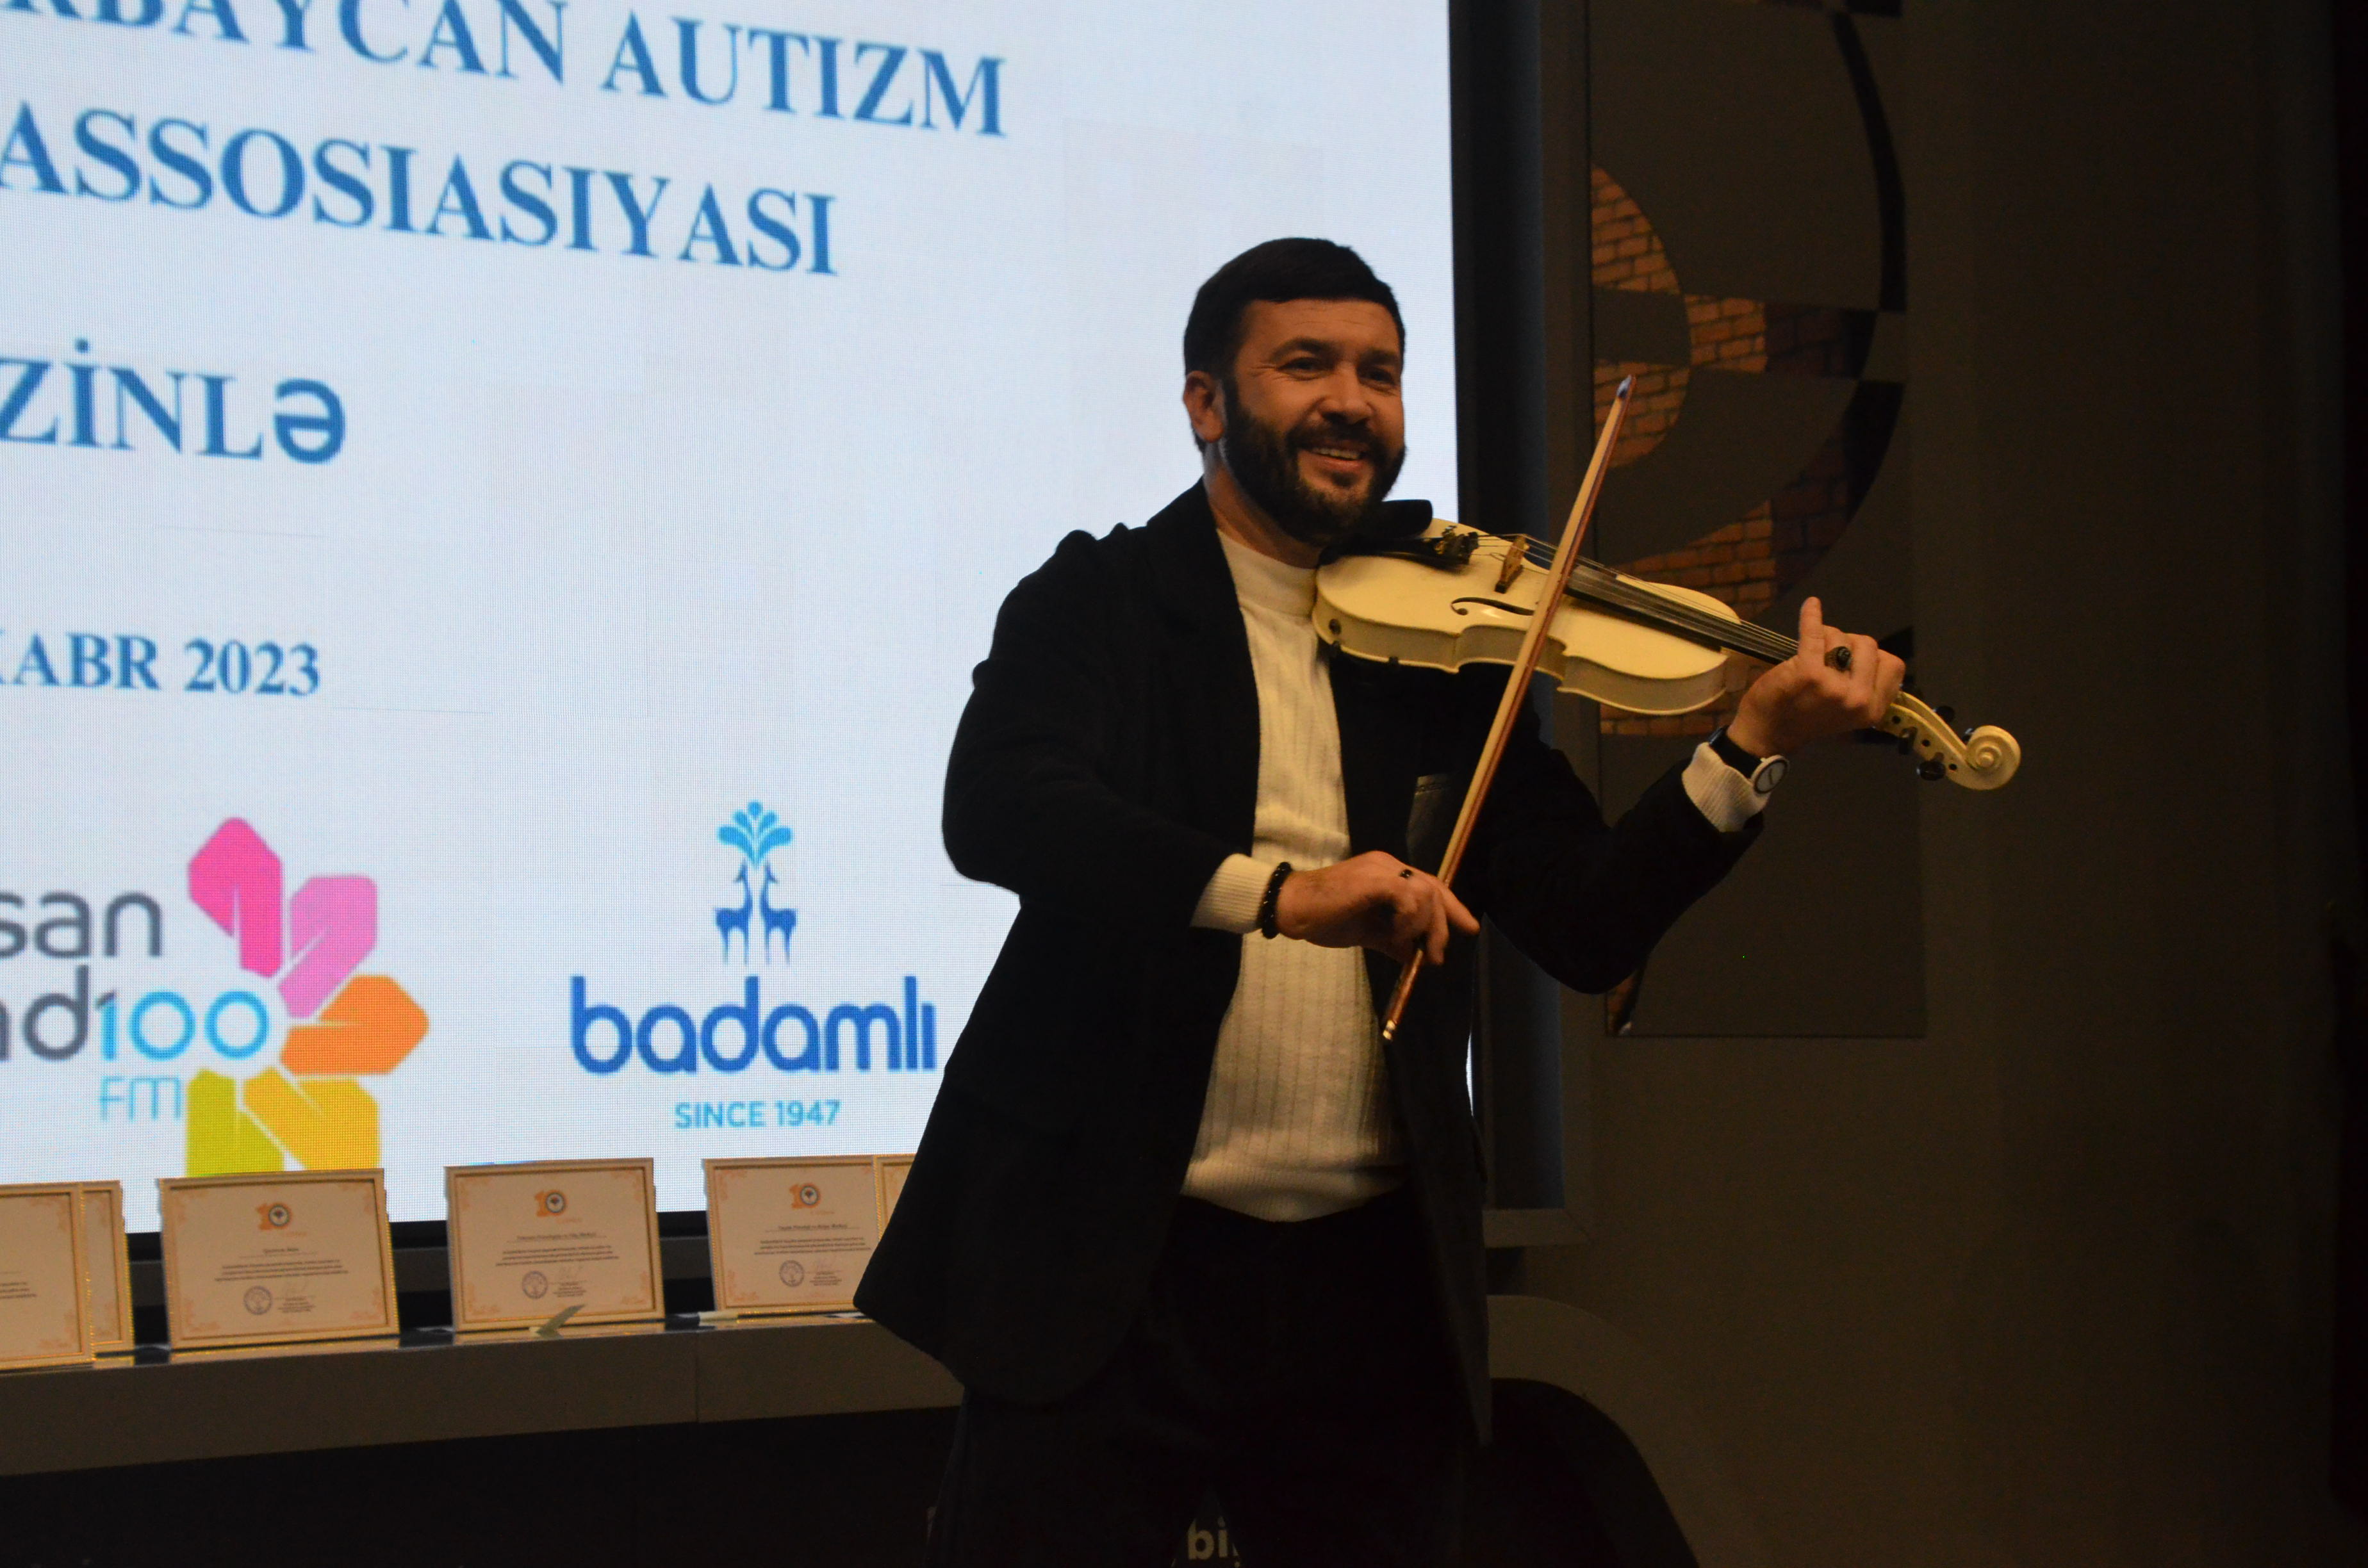 Azərbaycan Autizm Assosiasiyasının 10 illik yubileyi münasibəti ilə tədbir keçirilib - FOTO